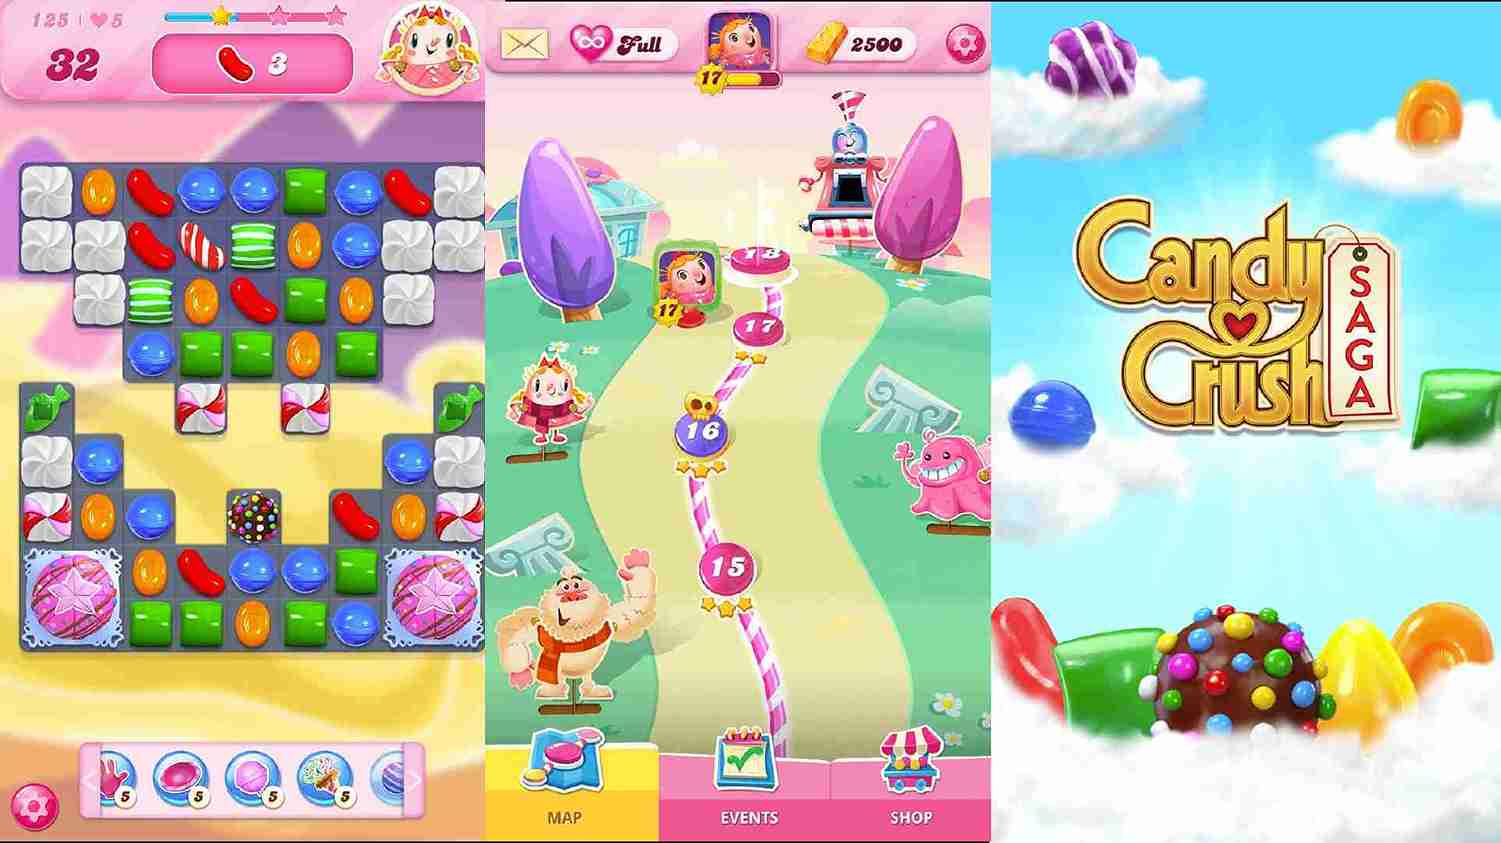 Candy Crush Saga Mod Apk Features